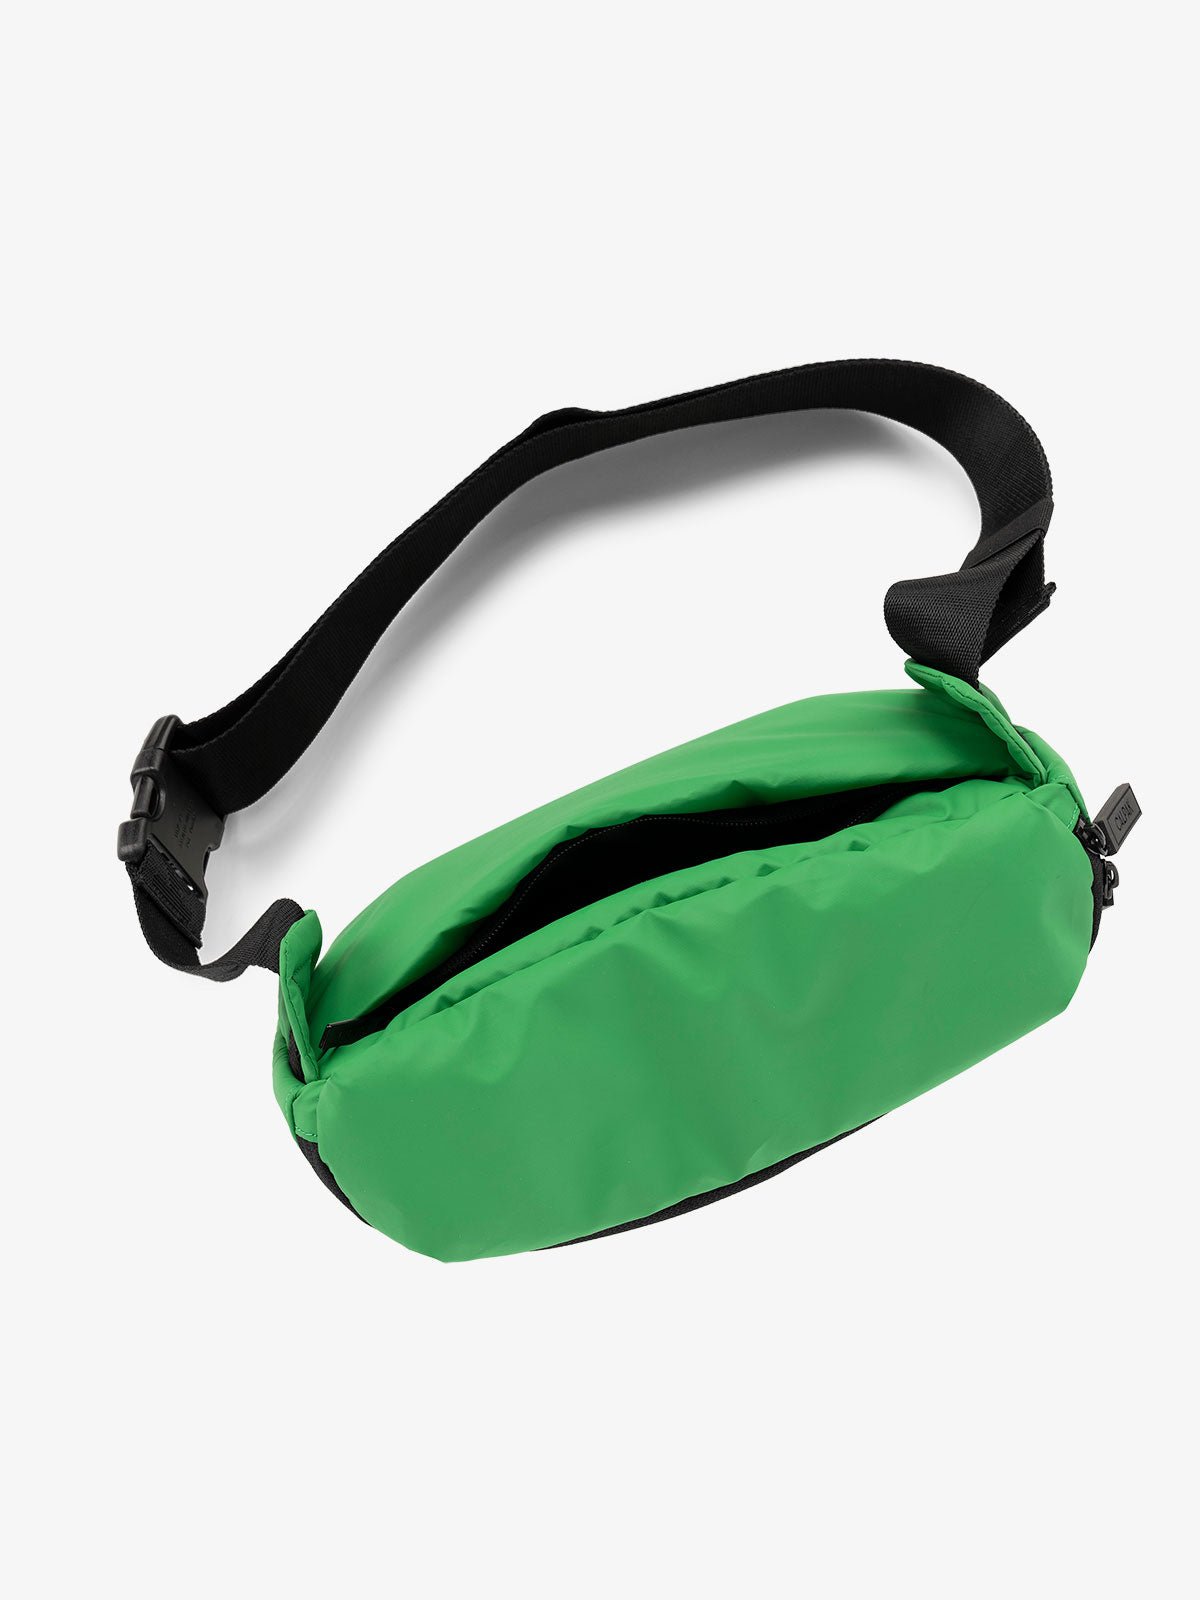 CALPAK Luka Belt Bag with adjustable strap and hidden back pocket in green apple